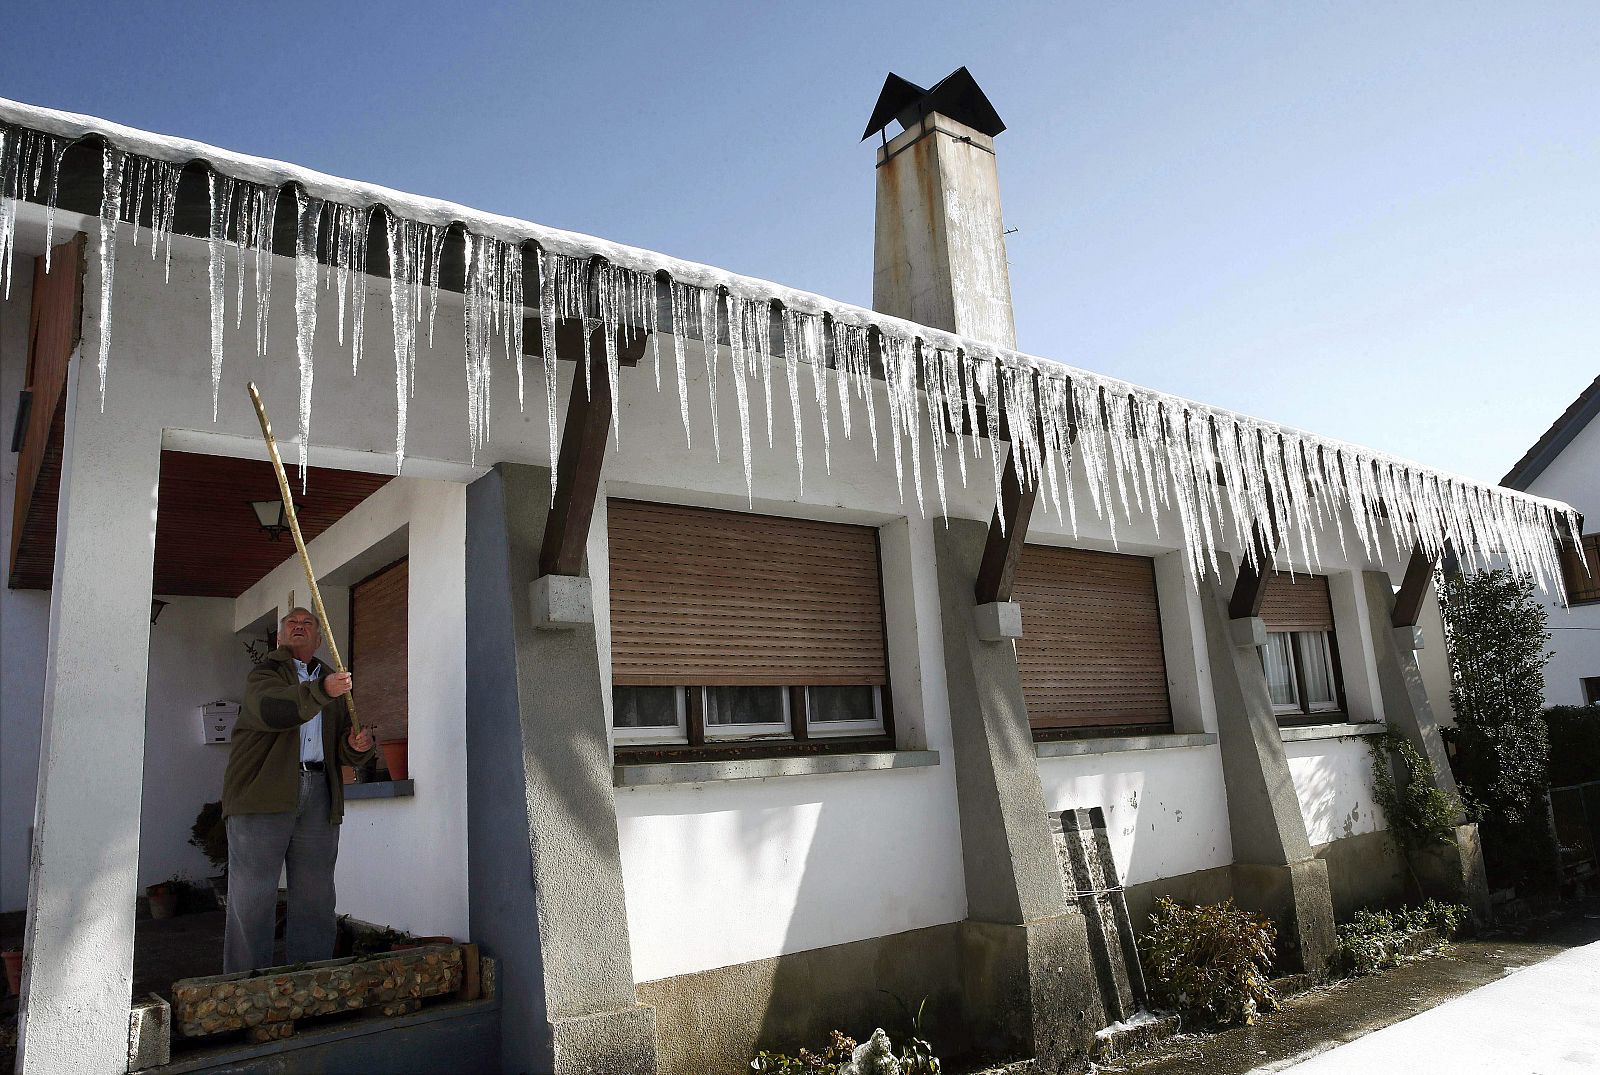 Un hombre observa los carámbanos de hielo sobre el tejado de su vivienda en Navarra